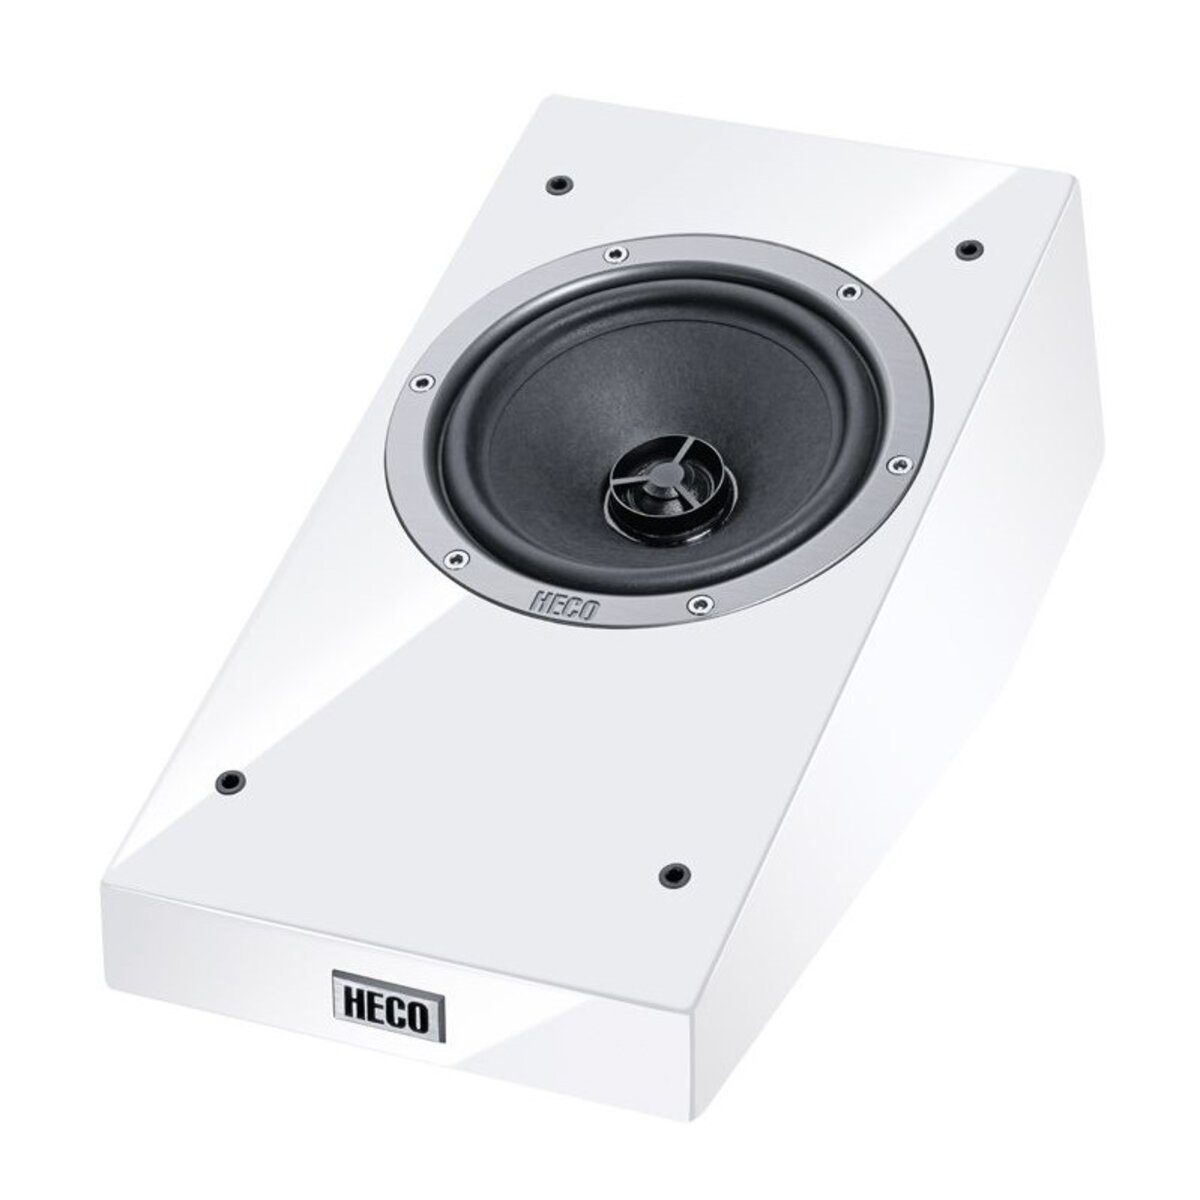 Heco AM 200 1 Atmos-Zusatzlautsprecher Paar Lautsprecher Farbe:Weiß (Keine)